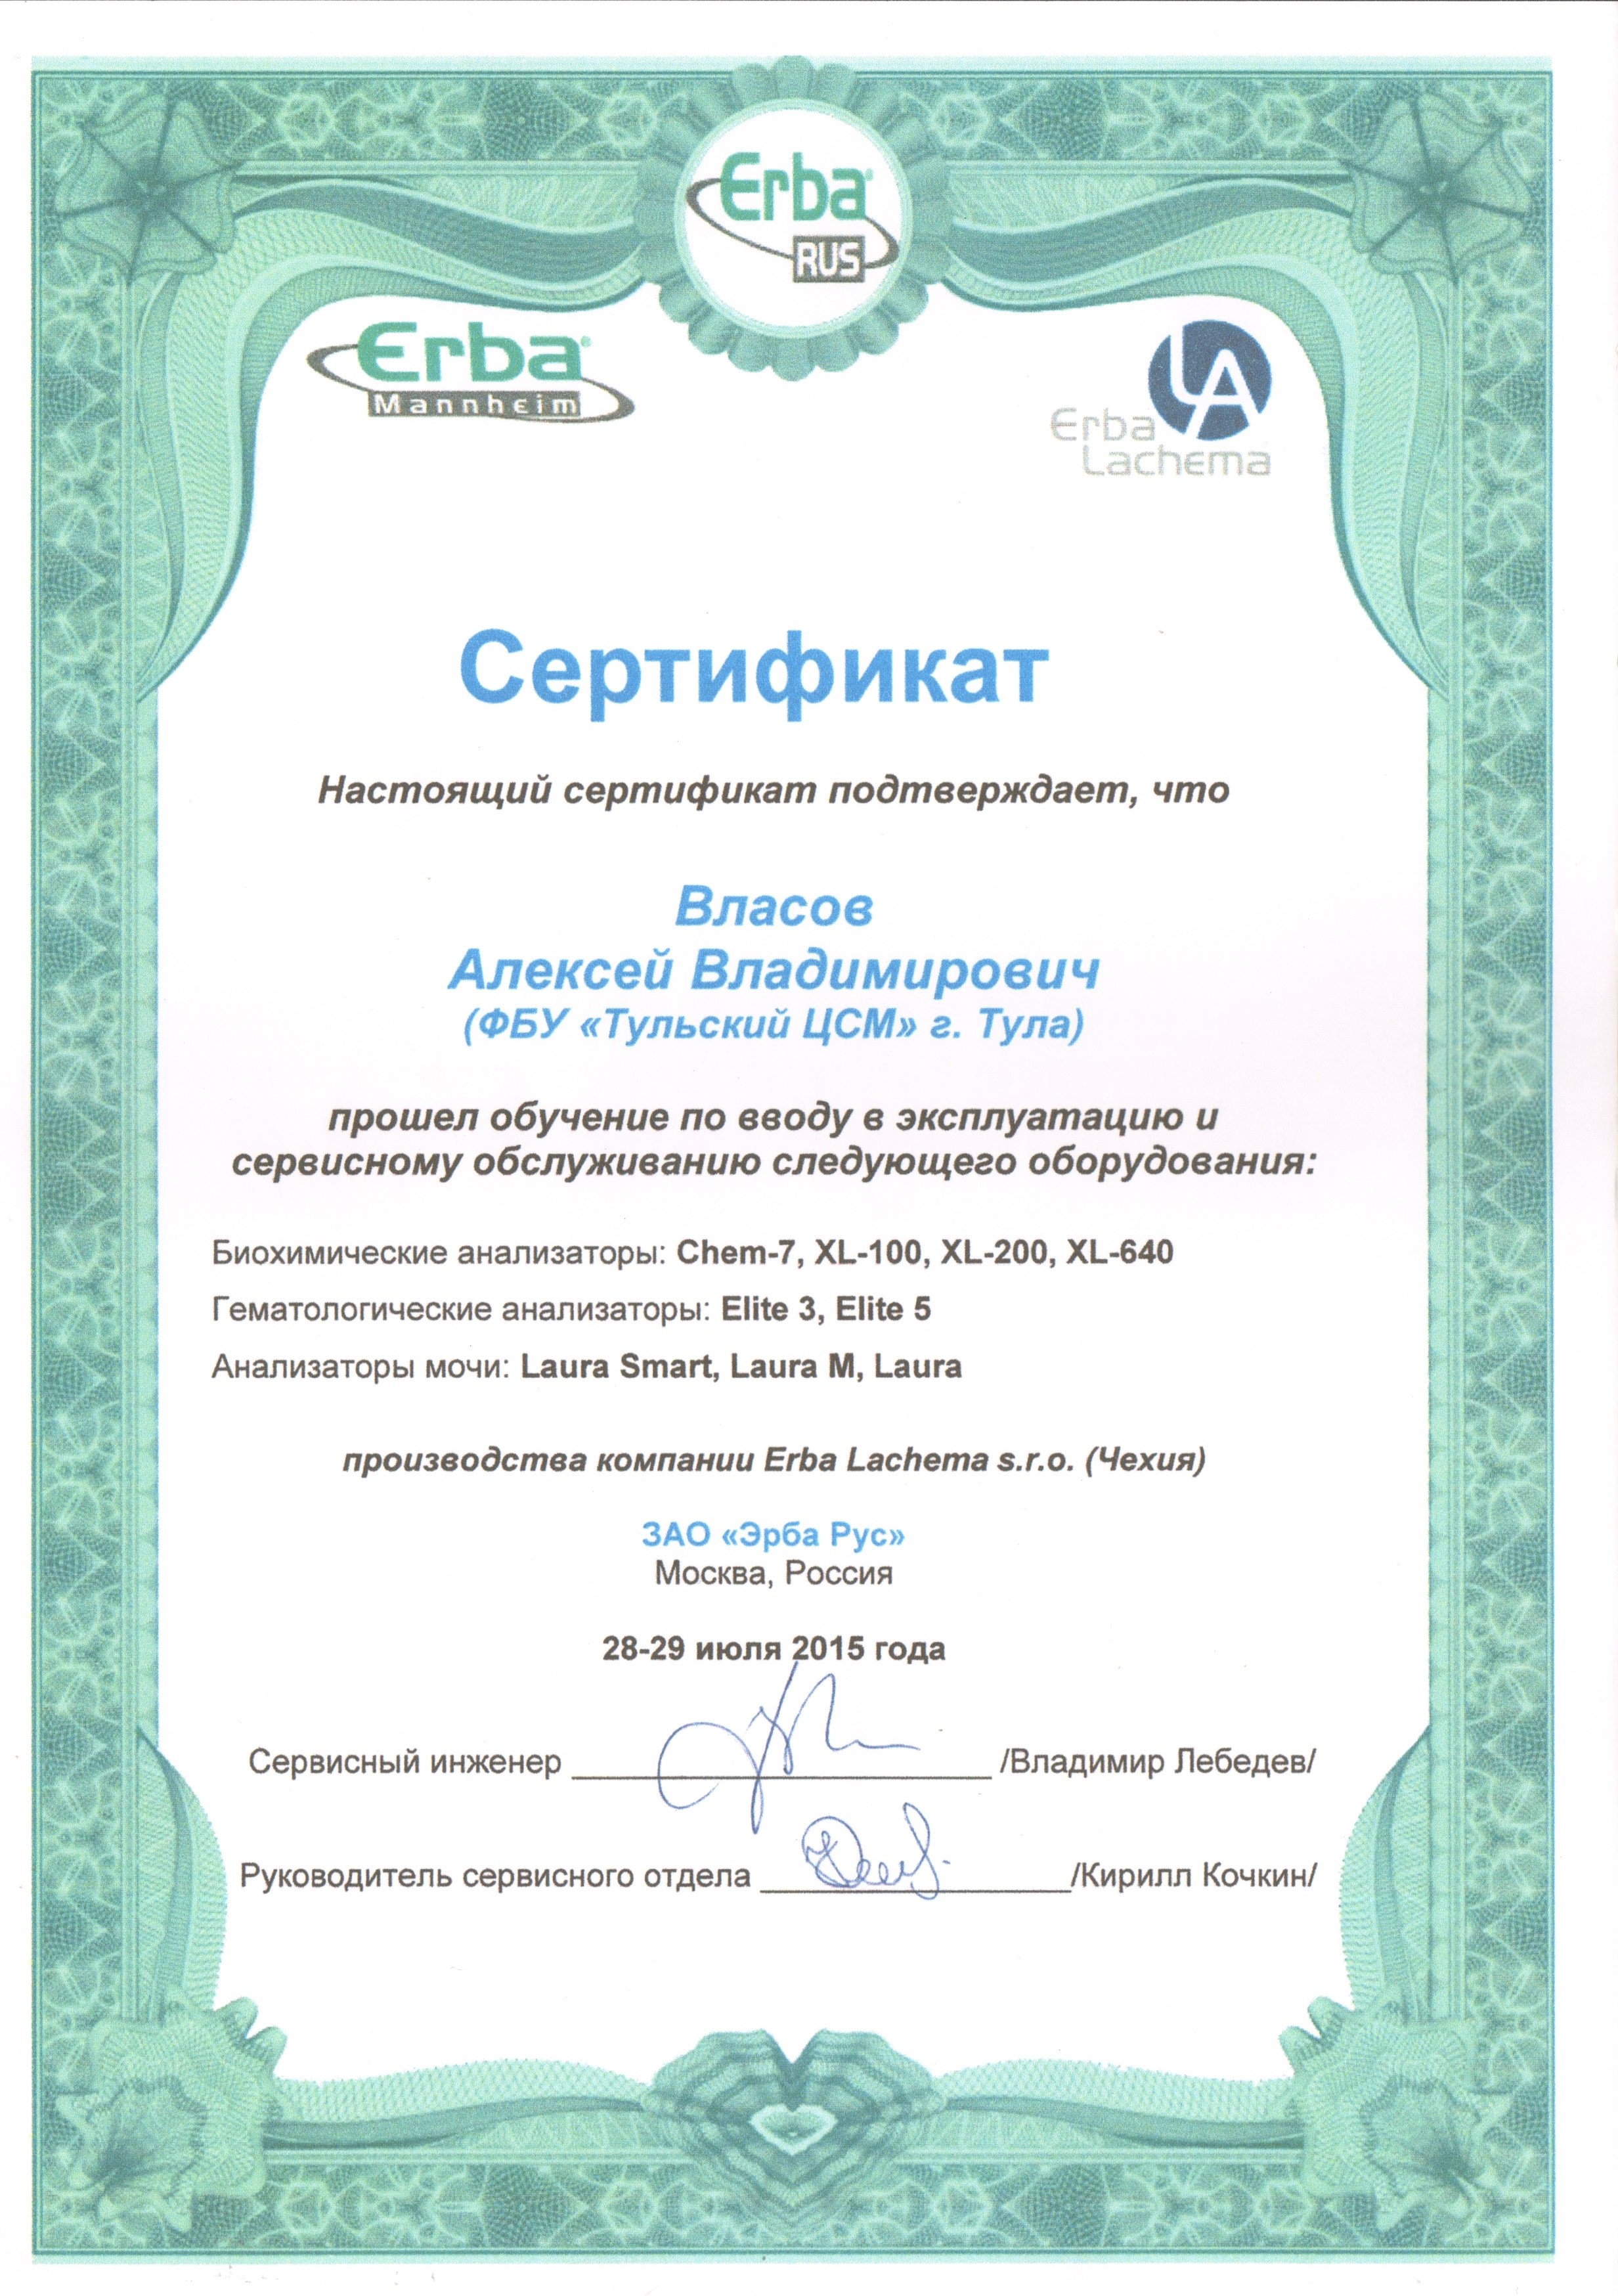 Сертификат от ЗАО «Эрба Рус»